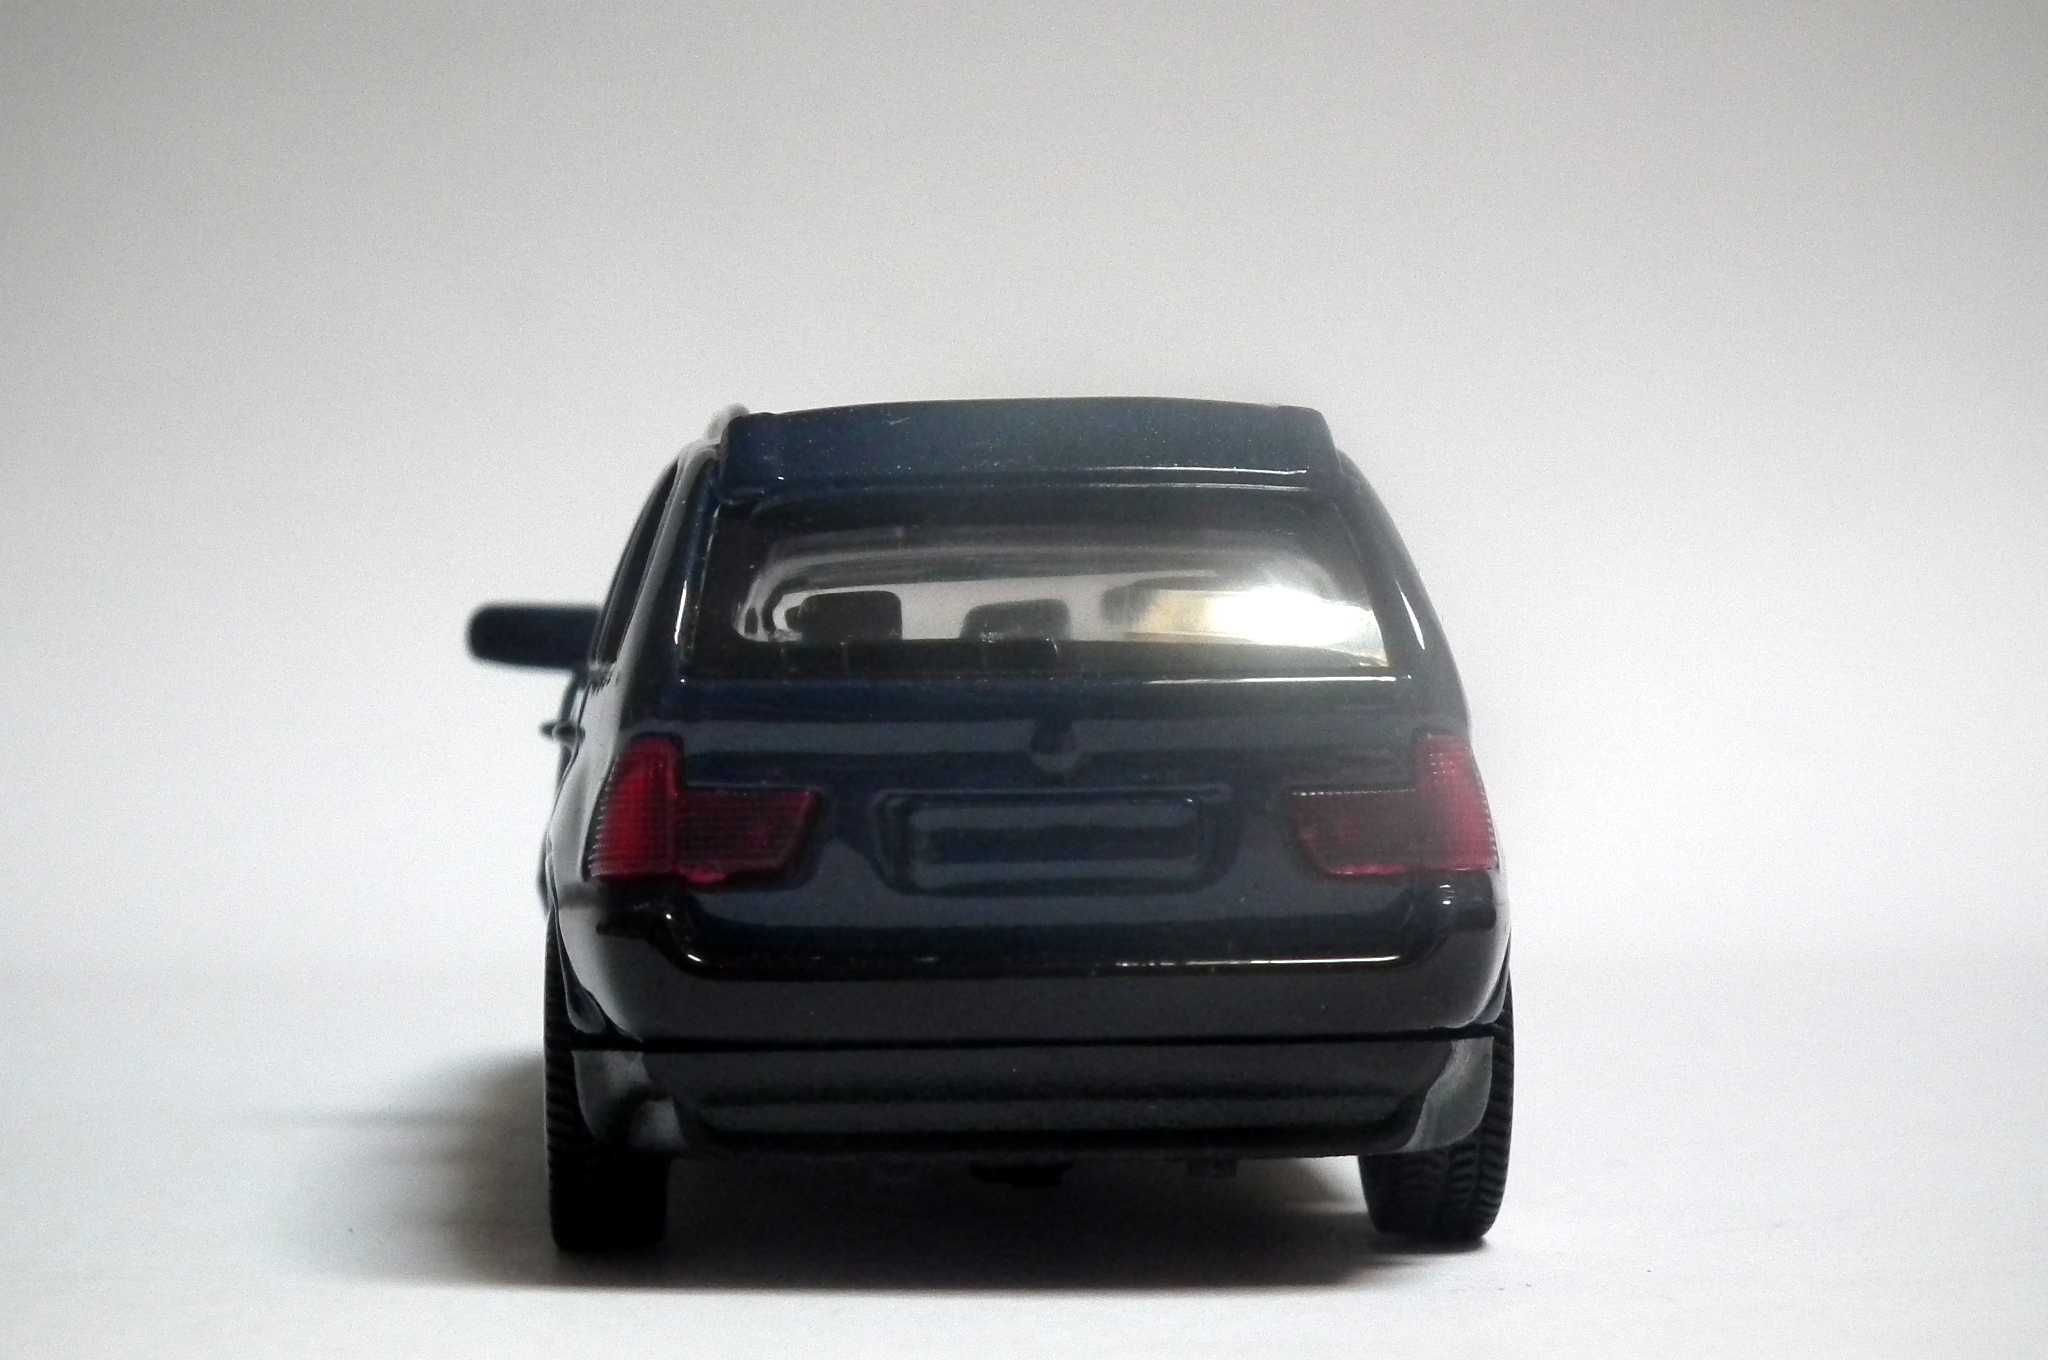 Miniatura BMW X5 (E53), 1.ª geração. Com caixa. Envio grátis.